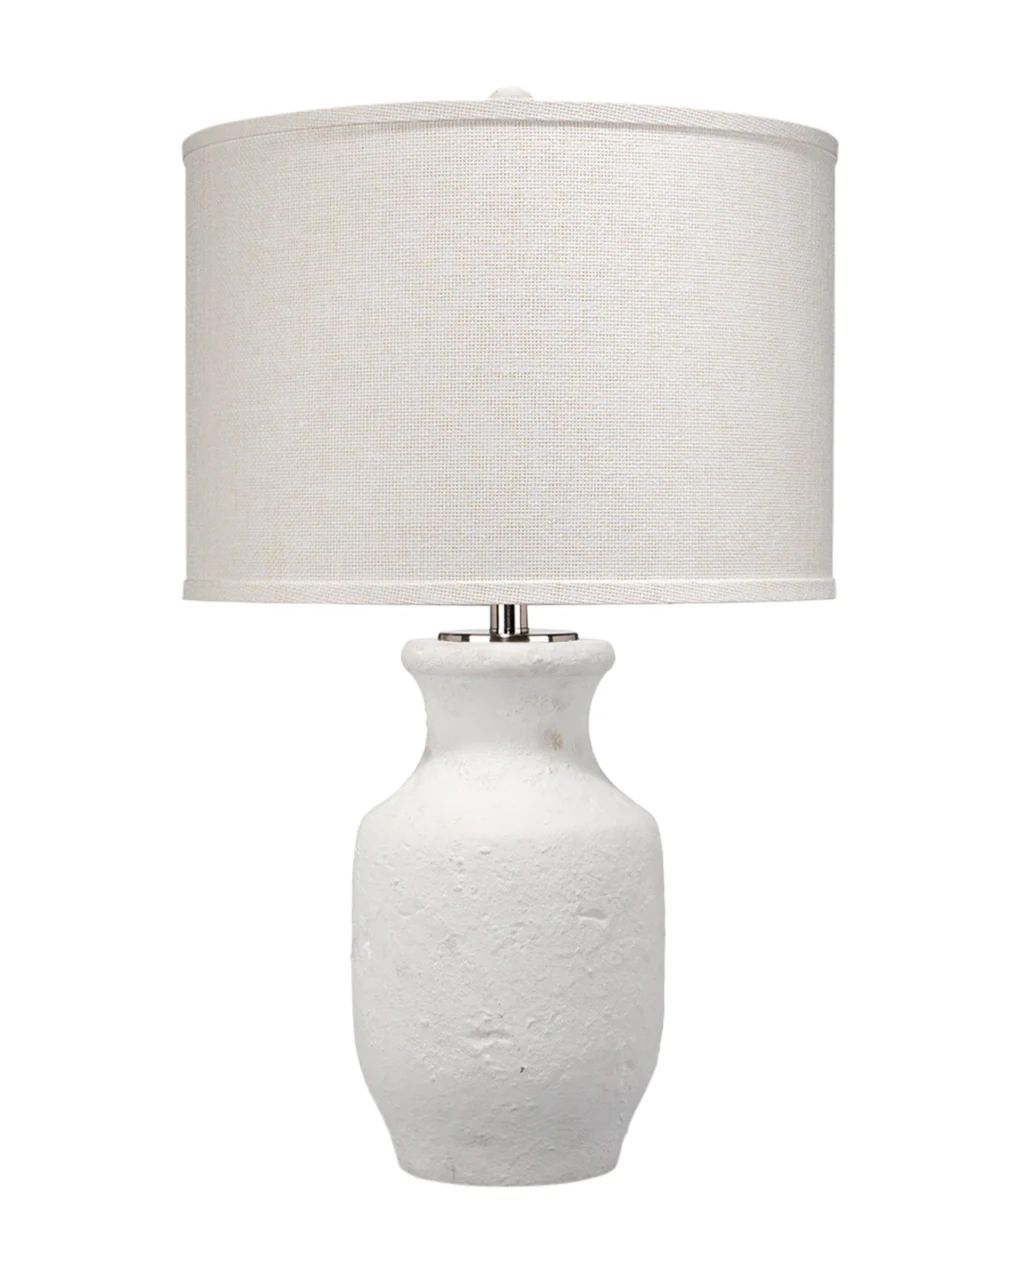 Gilbert Table Lamp | McGee & Co.